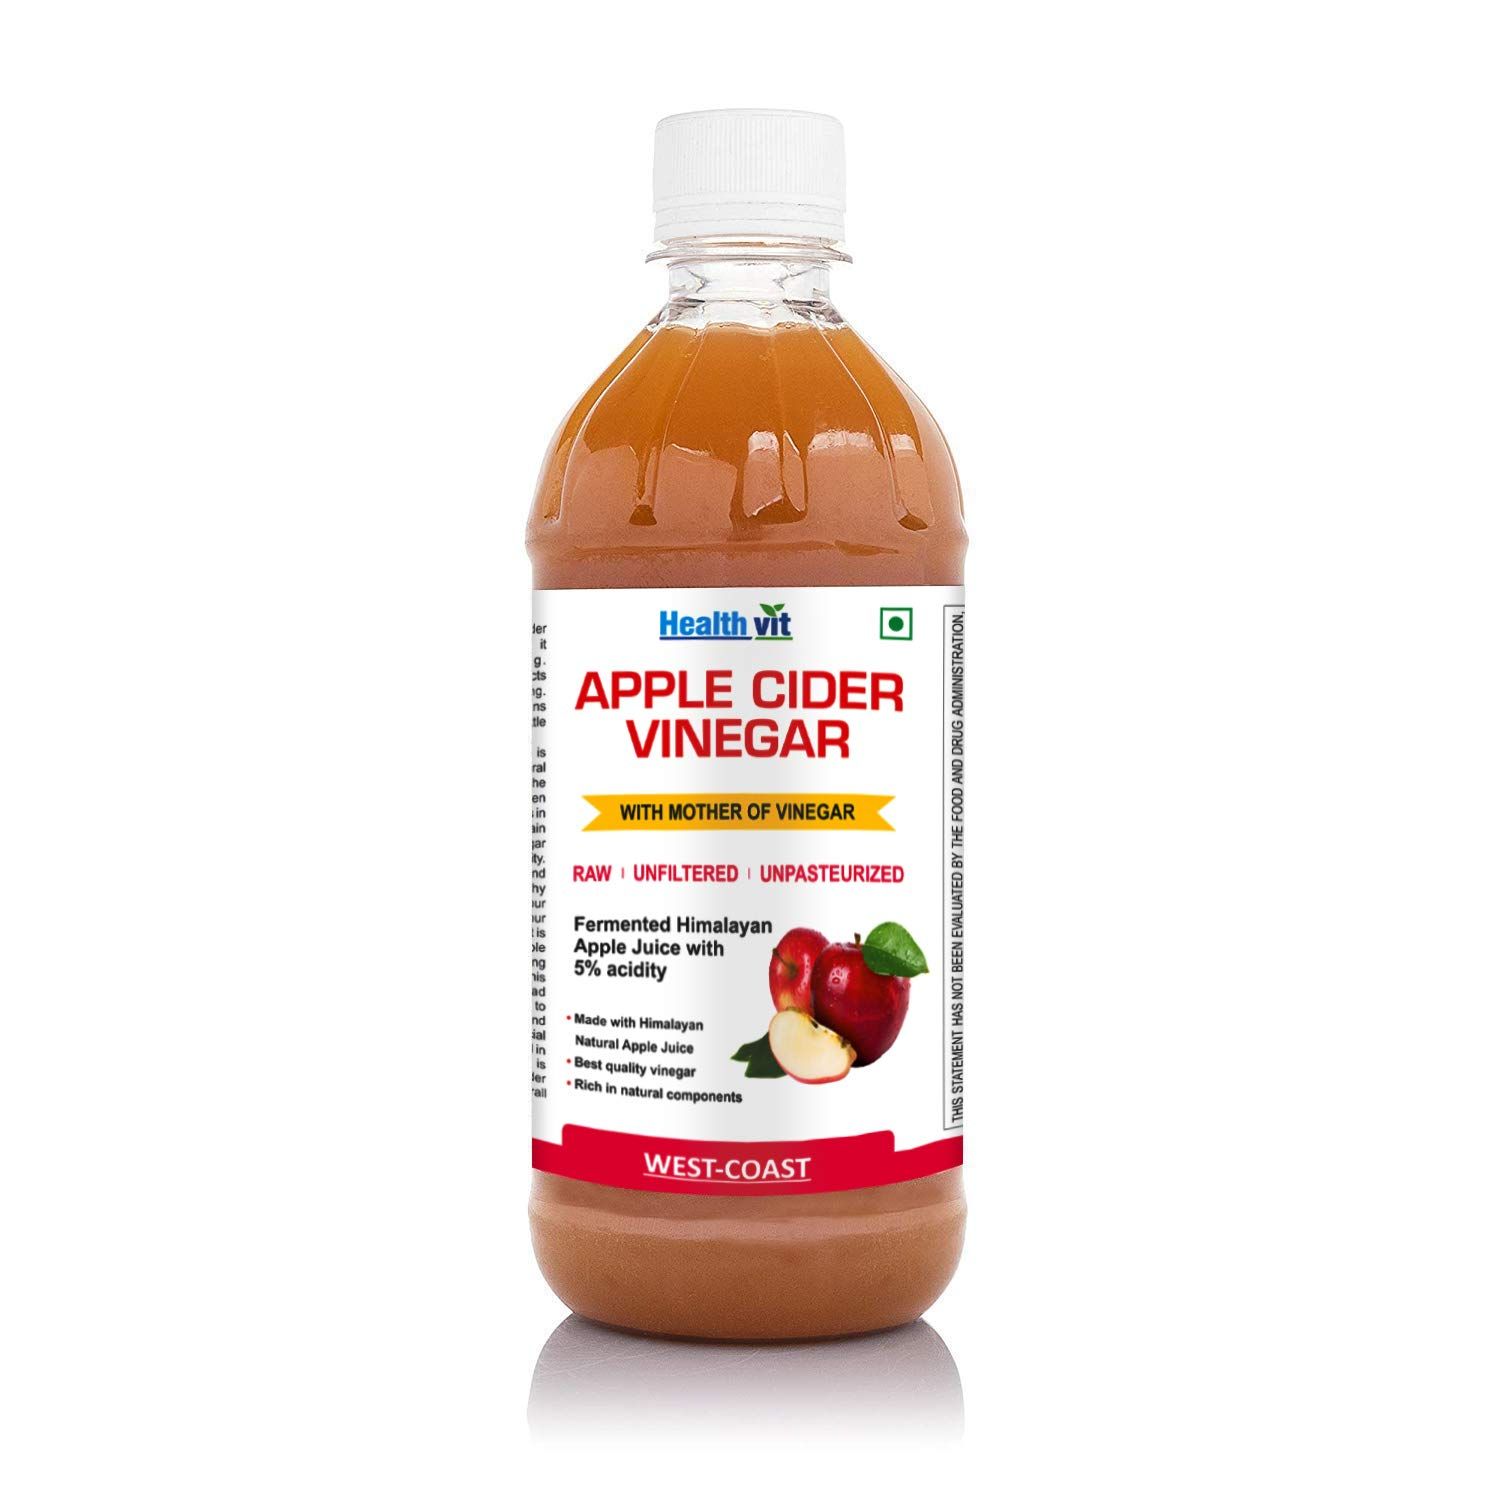 HealthVit Apple Cider Vinegar with Mother Vinegar Unfiltered Image